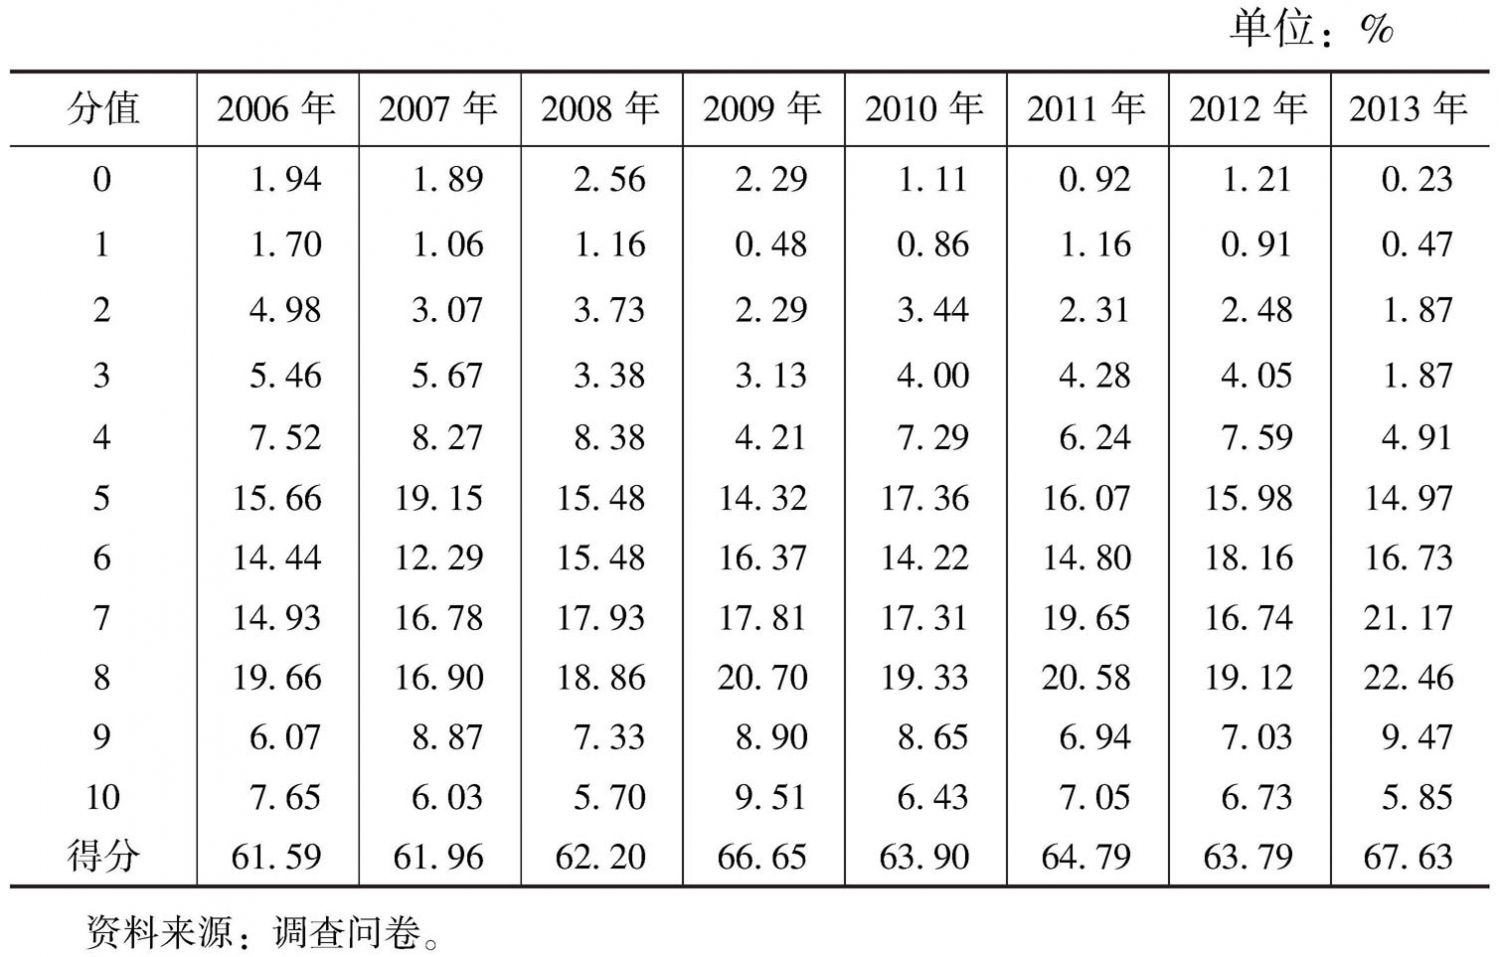 表4-42 公共定价的合理性（2006～2013年）